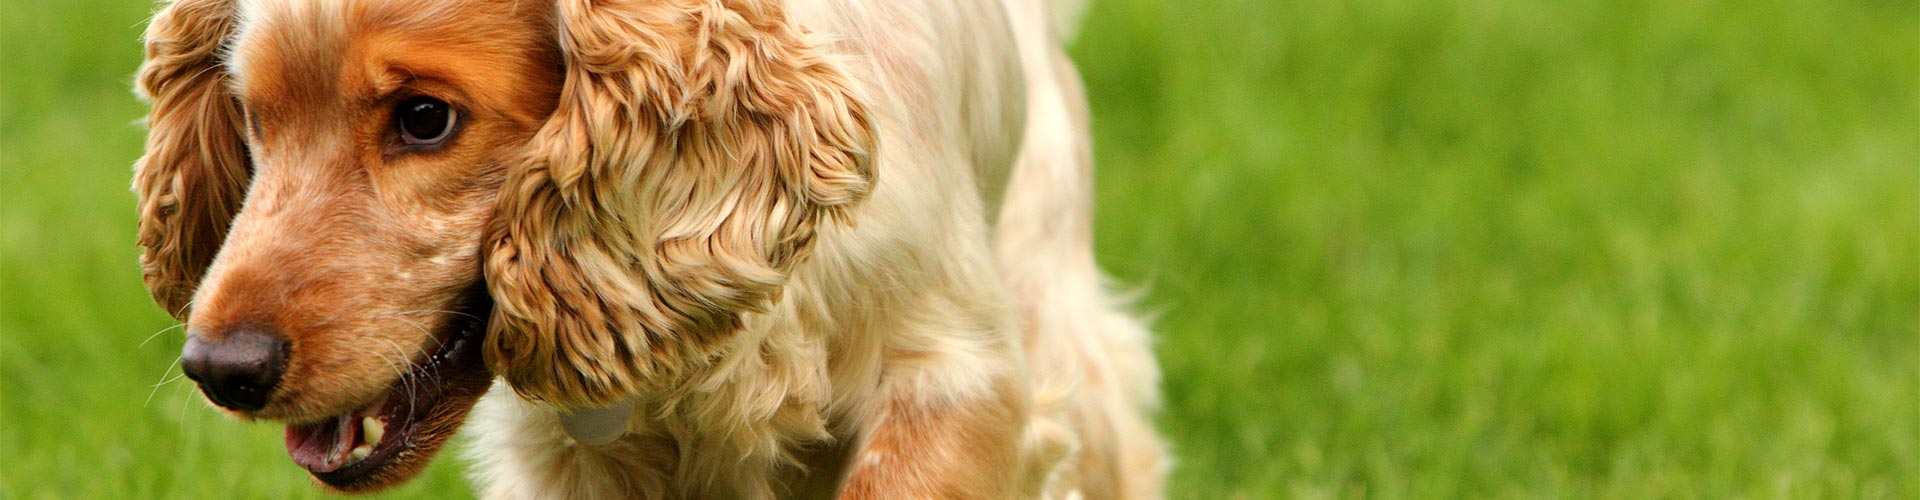 Casas rurales que admiten perros en Cantabria